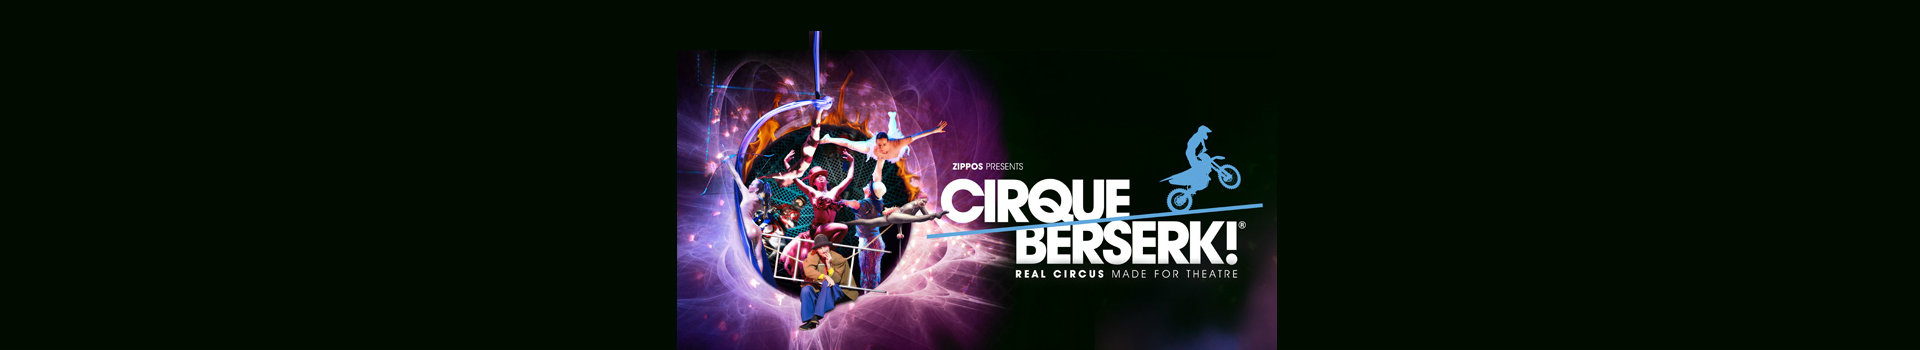 Zippos Presents Cirque Berserk! tickets London